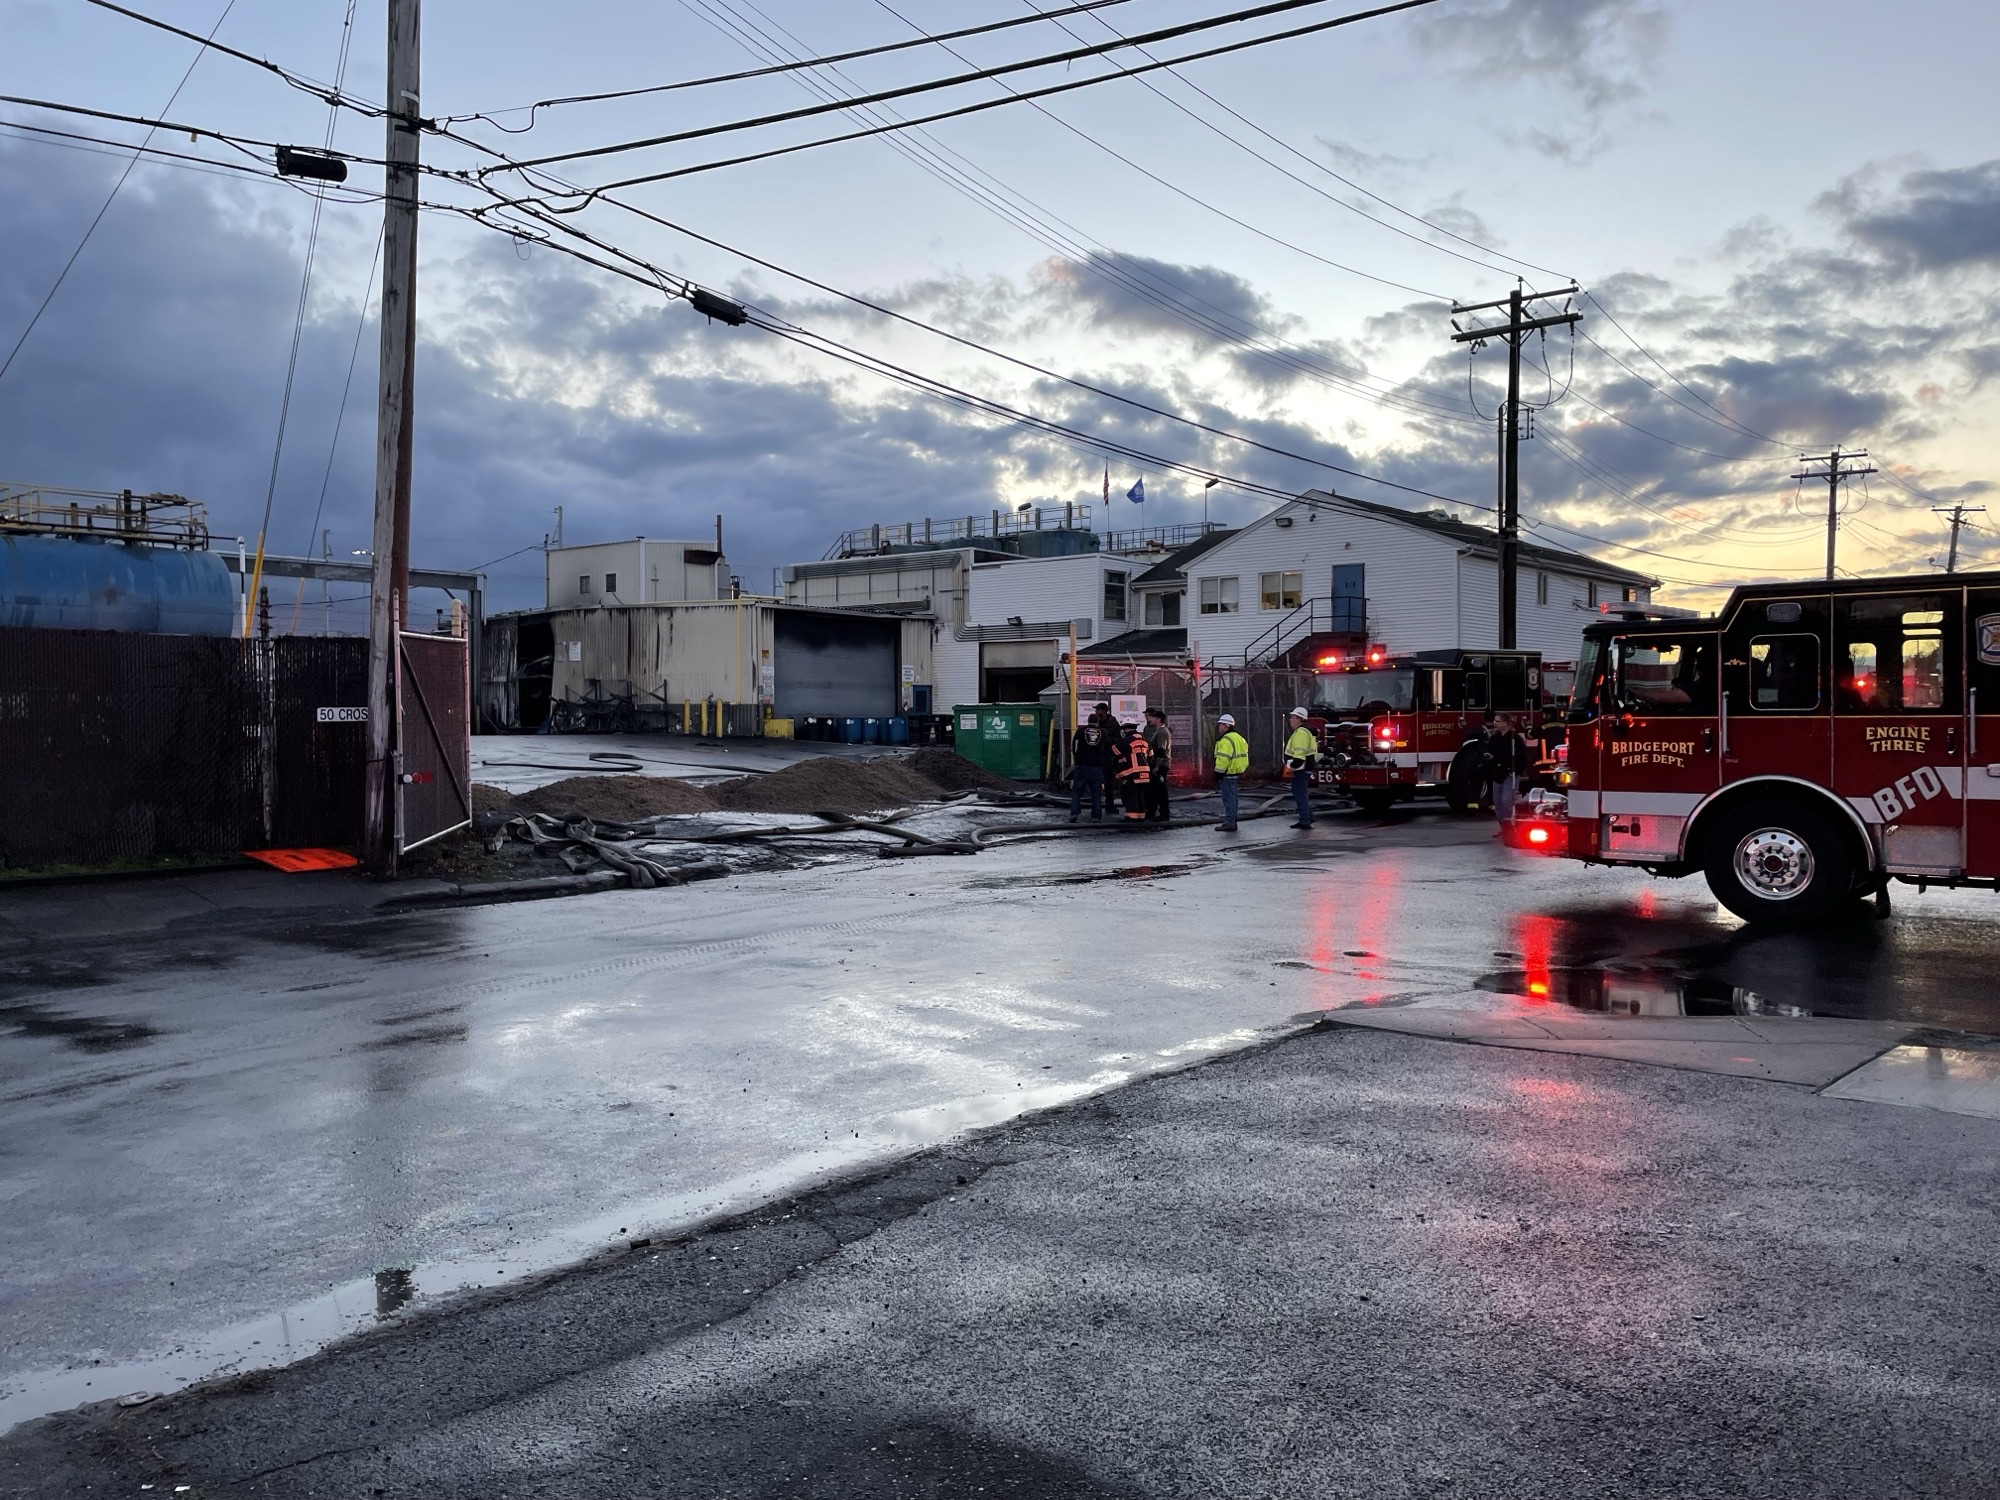 3 heridos tras explosión e incendio importante en negocio de Bridgeport – NBC Connecticut